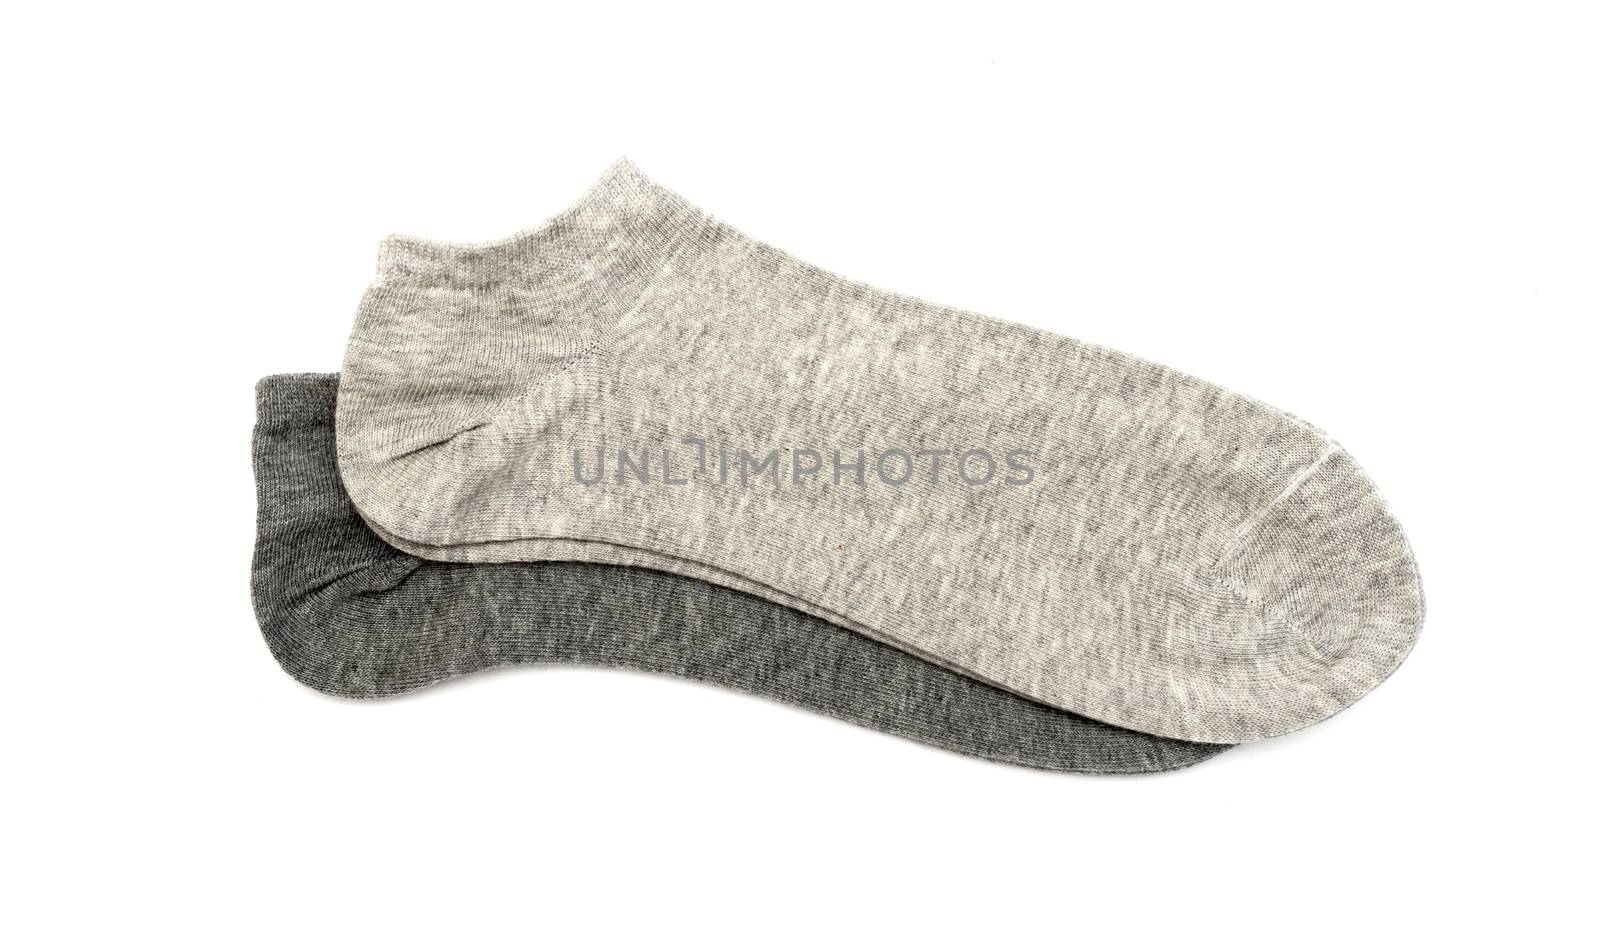 gray men's socks on a white background